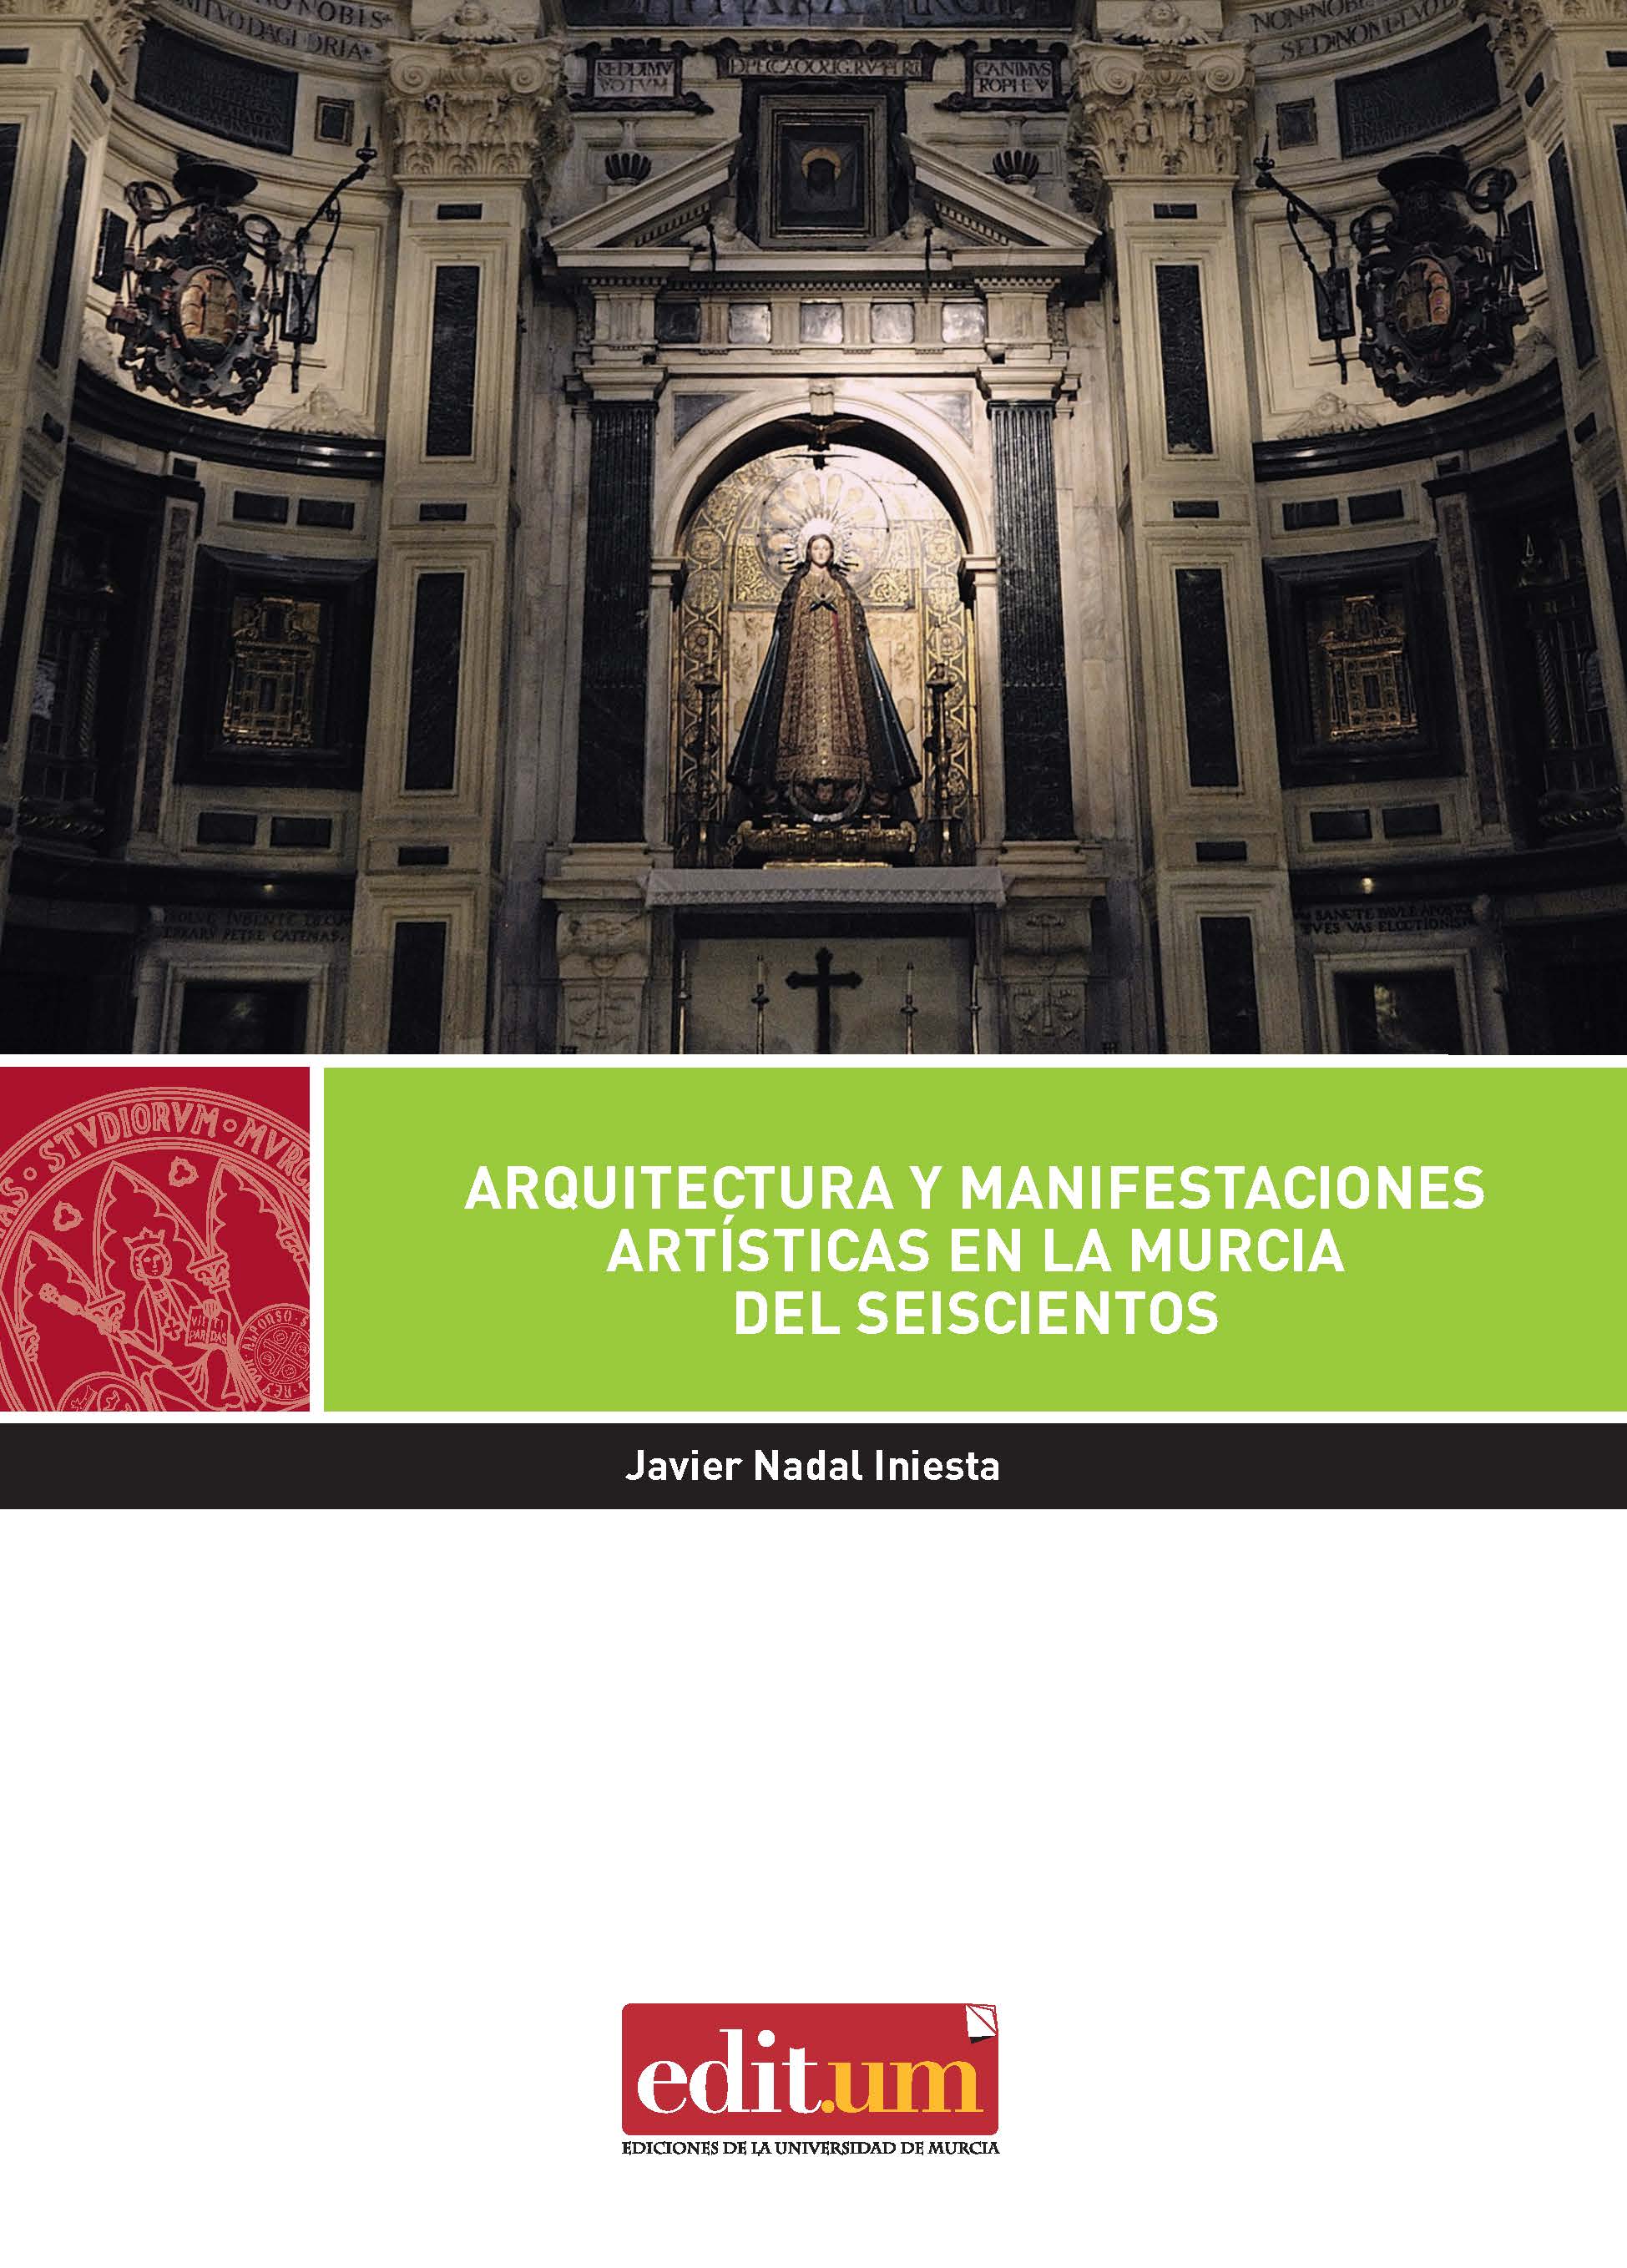 Imagen de portada del libro Arquitectura y manifestaciones artísticas en la Murcia del Seiscientos